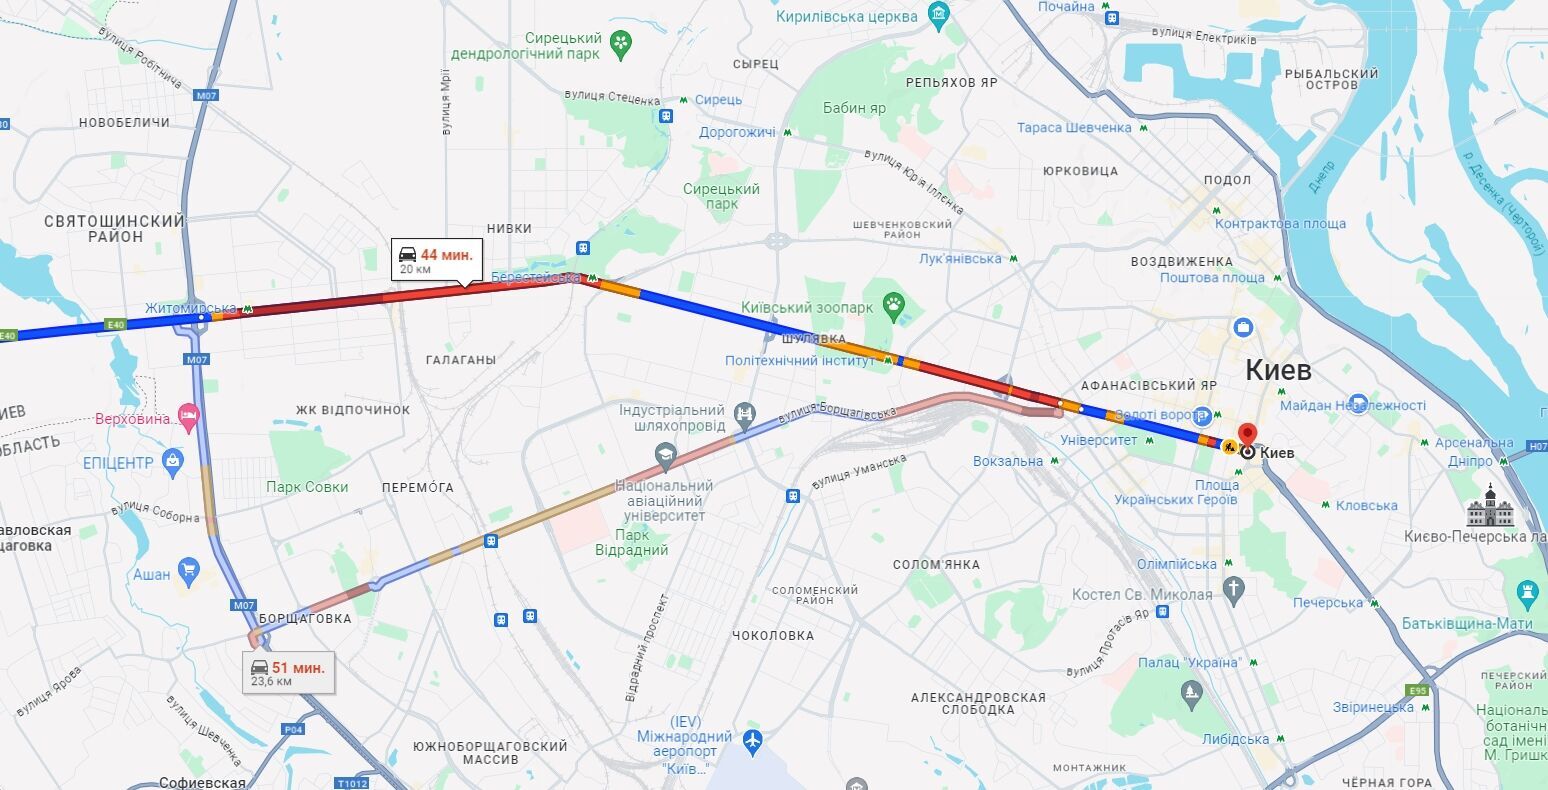 В Киеве утренние пробки осложнили движение на дорогах: где "тянутся" машины. Карта